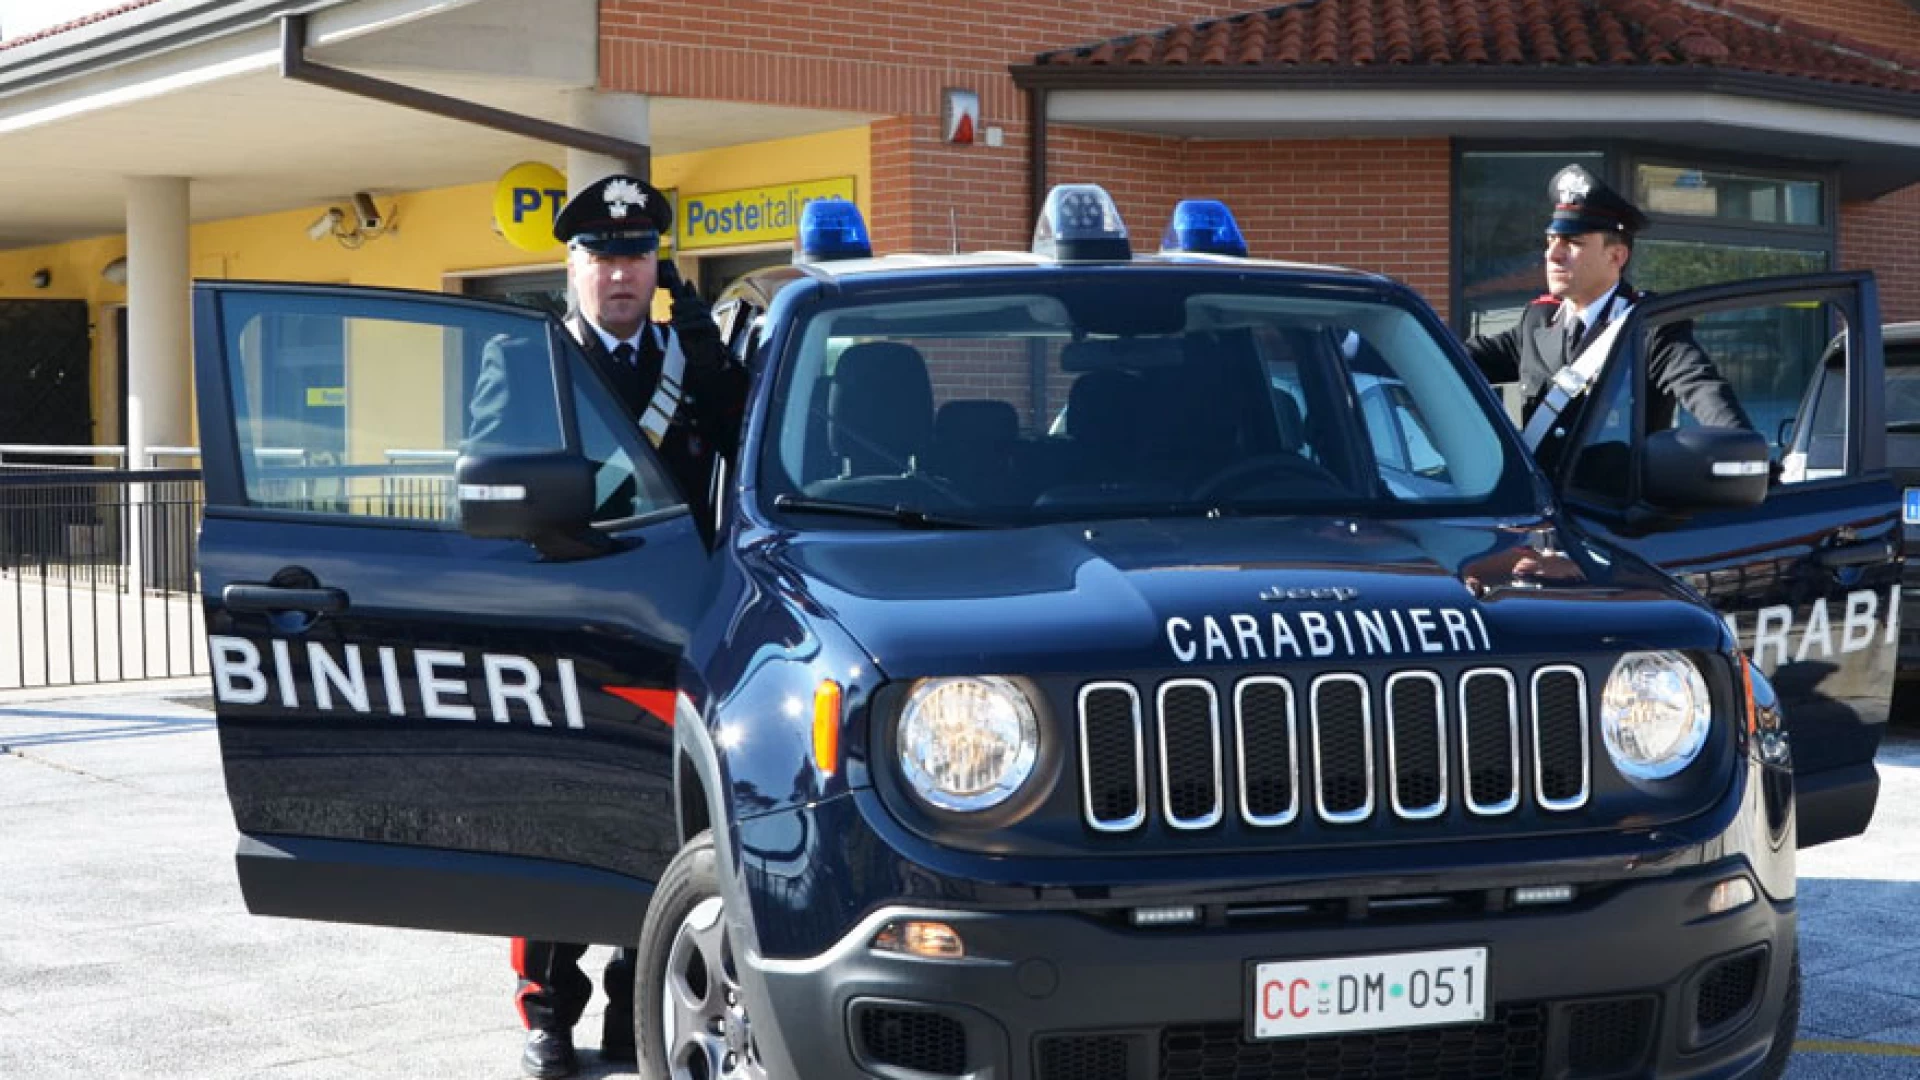 Isernia: Controlli a tappeto dei Carabinieri su sale gioco e centri scommesse, un gestore denunciato all’Autorità Giudiziaria  e tre sanzionati per irregolarità amministrative.